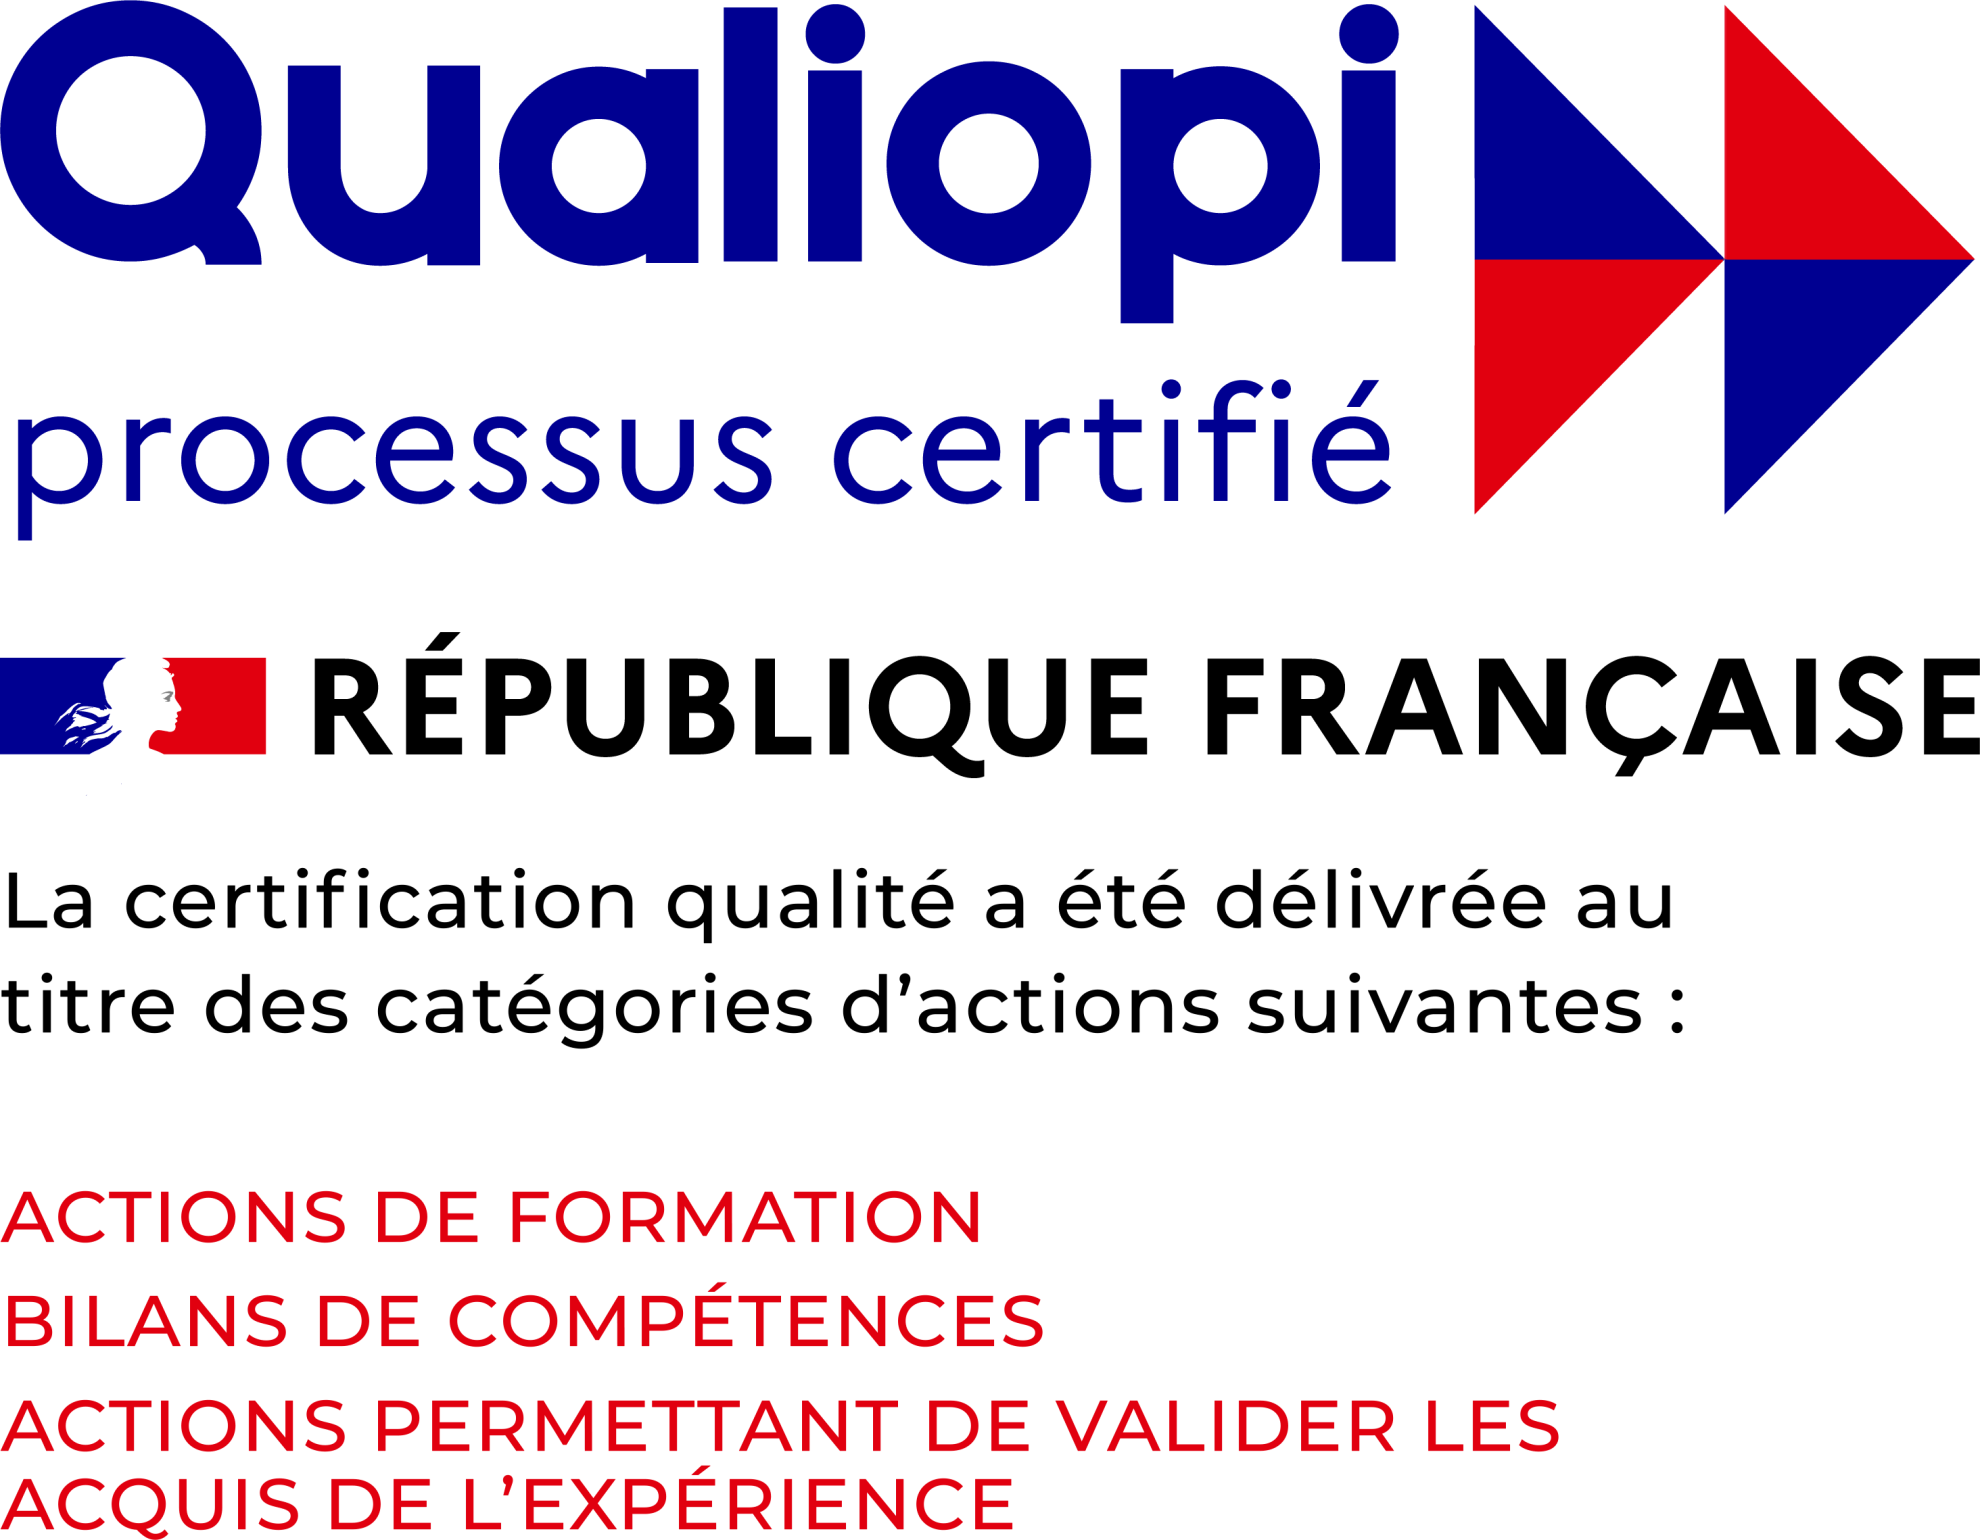 logo Qualiopi processus certifié